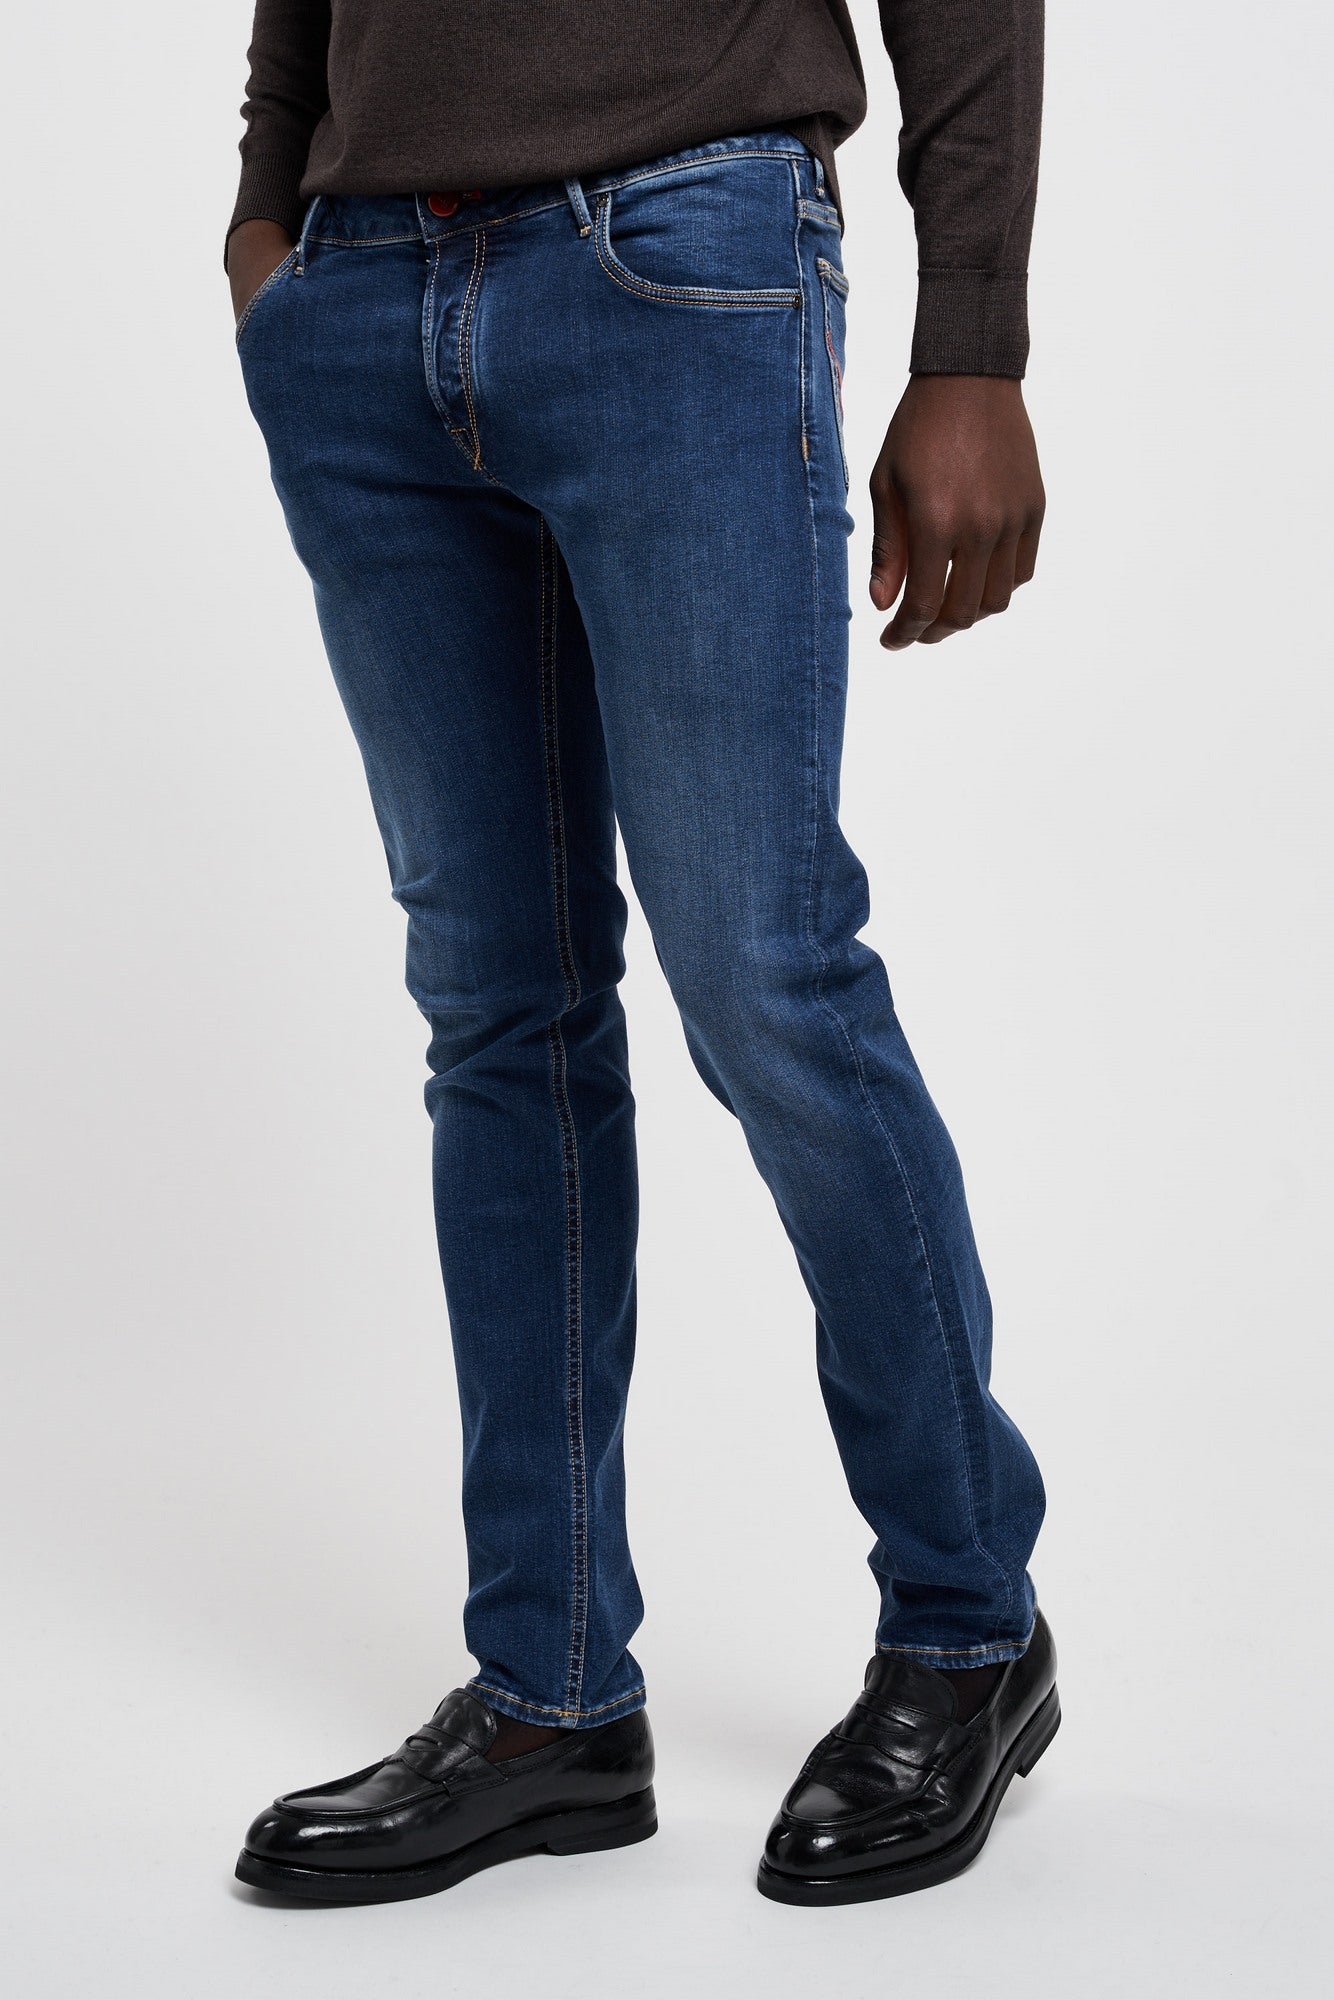 Ausgewählte Jeans Orvieto aus blauer Baumwolle-5